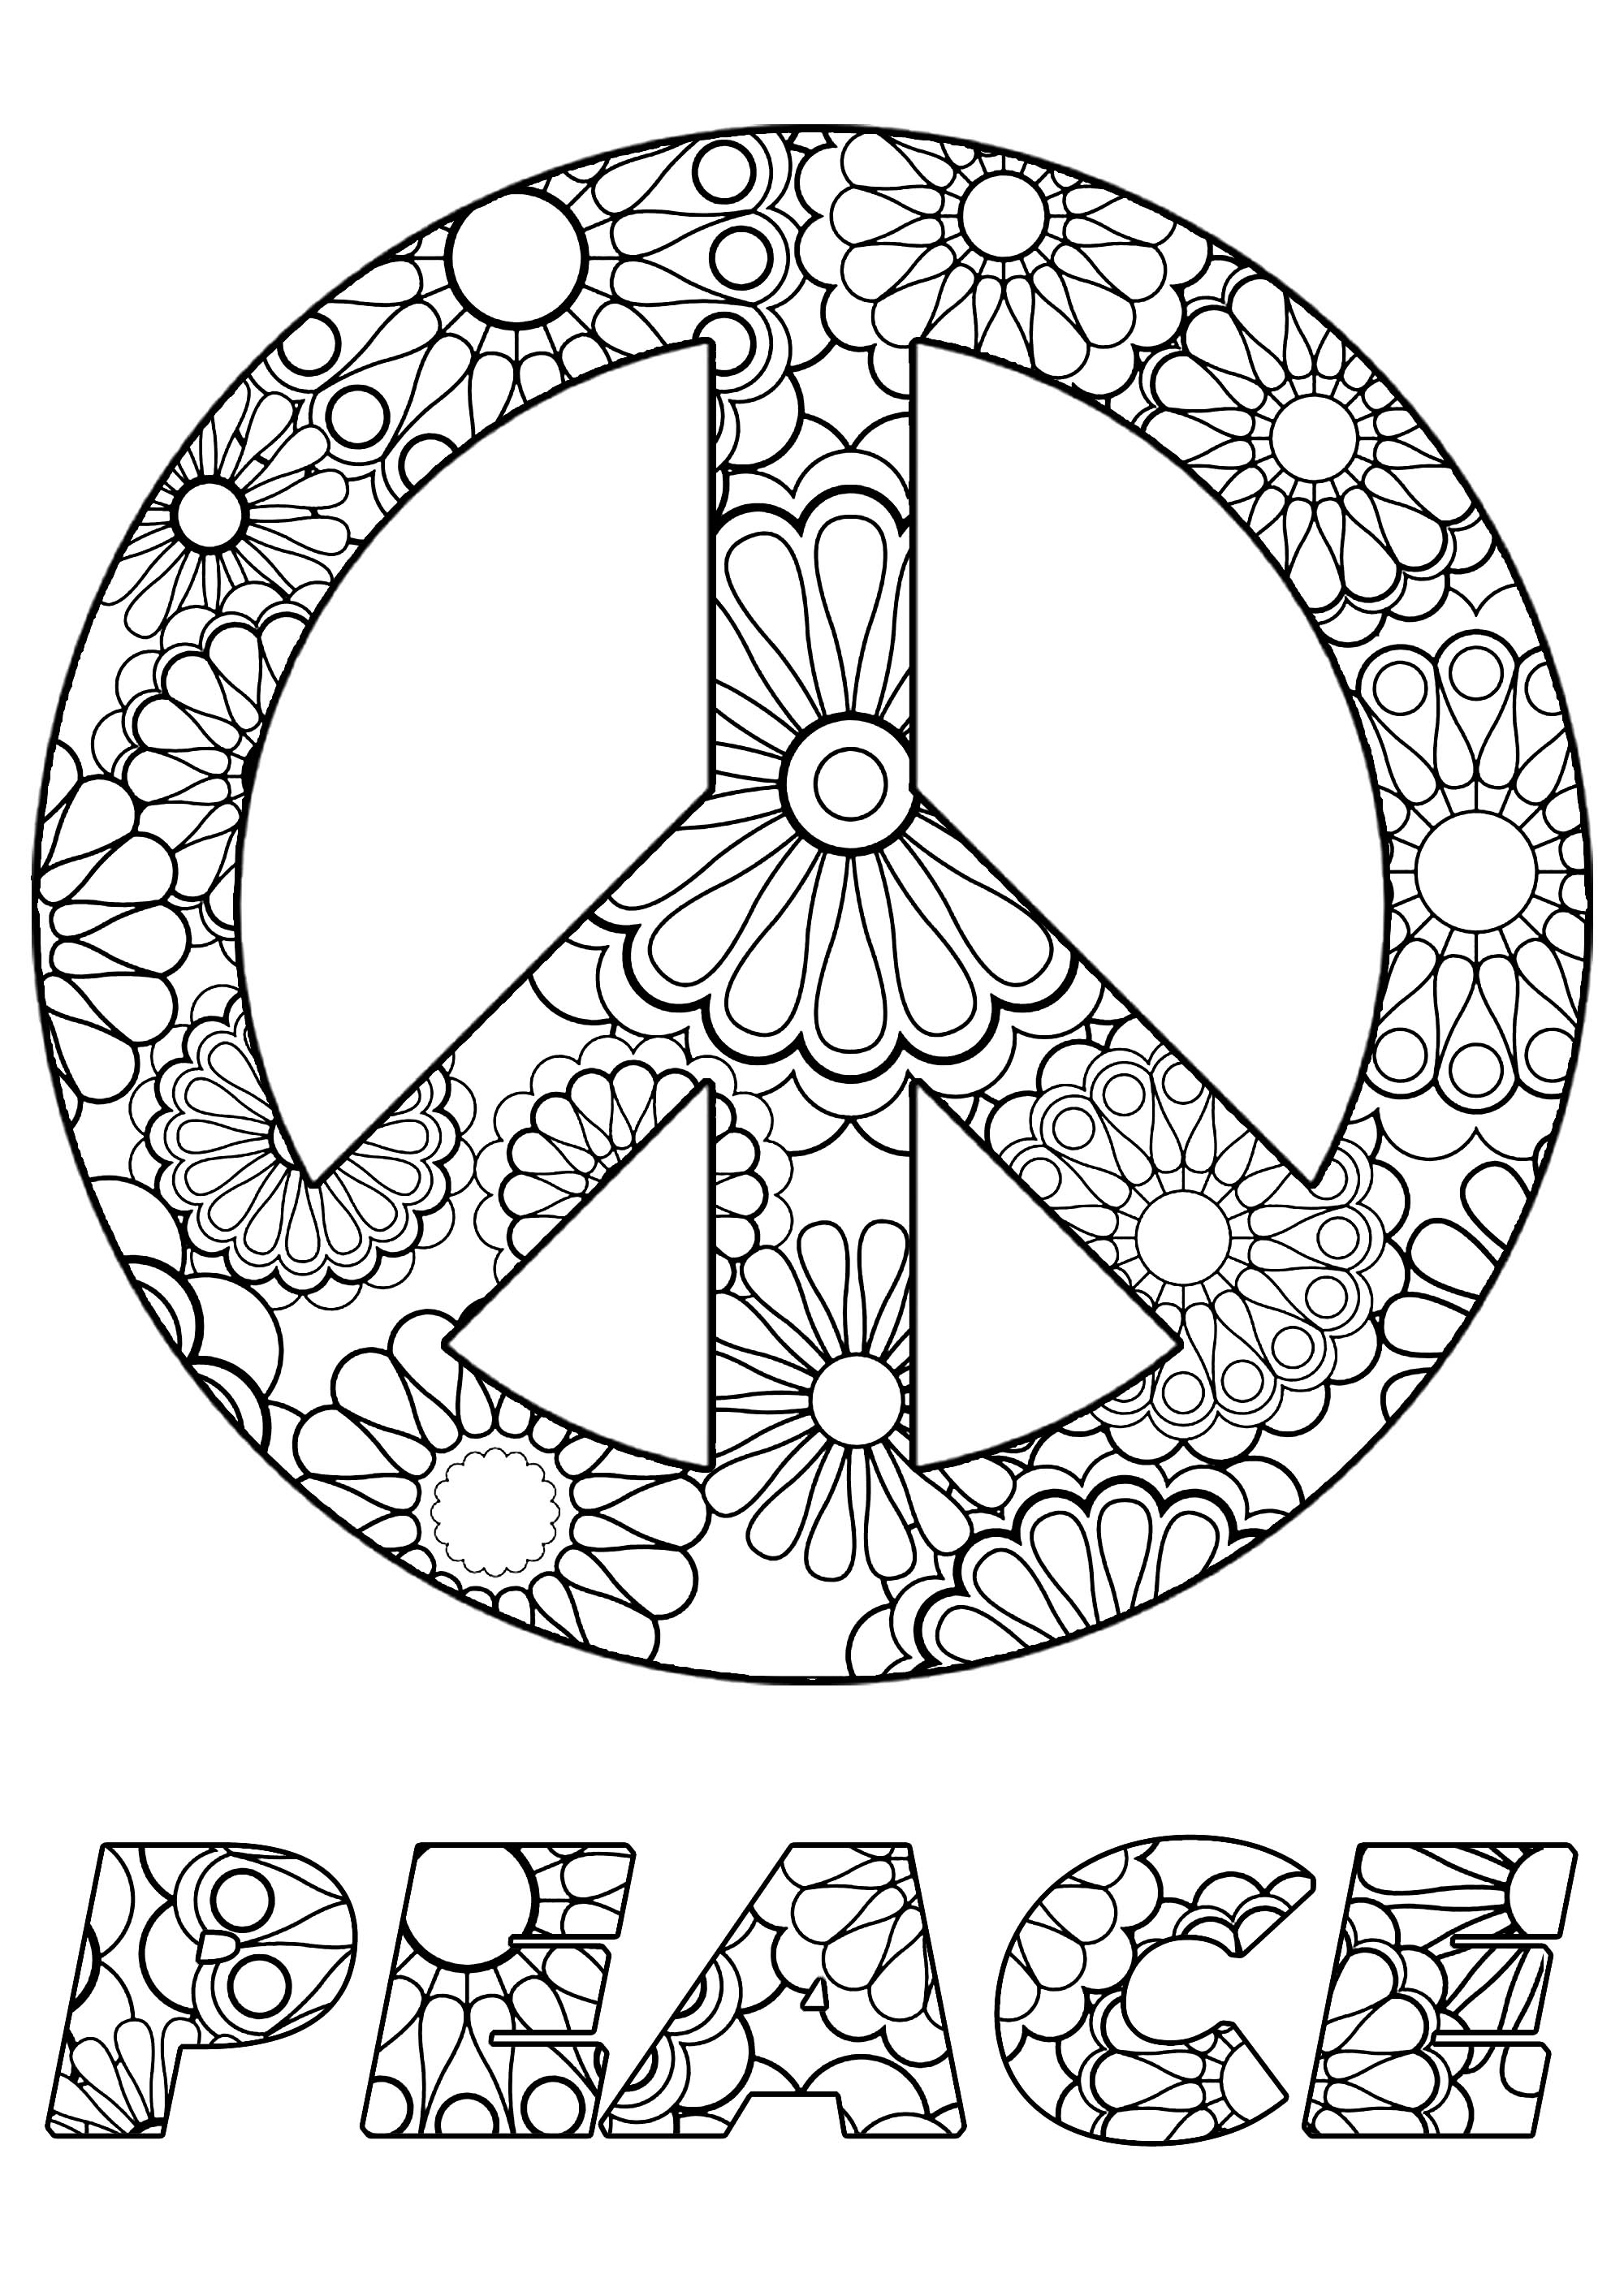 Colorir o símbolo e o texto da Paz, com belas flores no interior